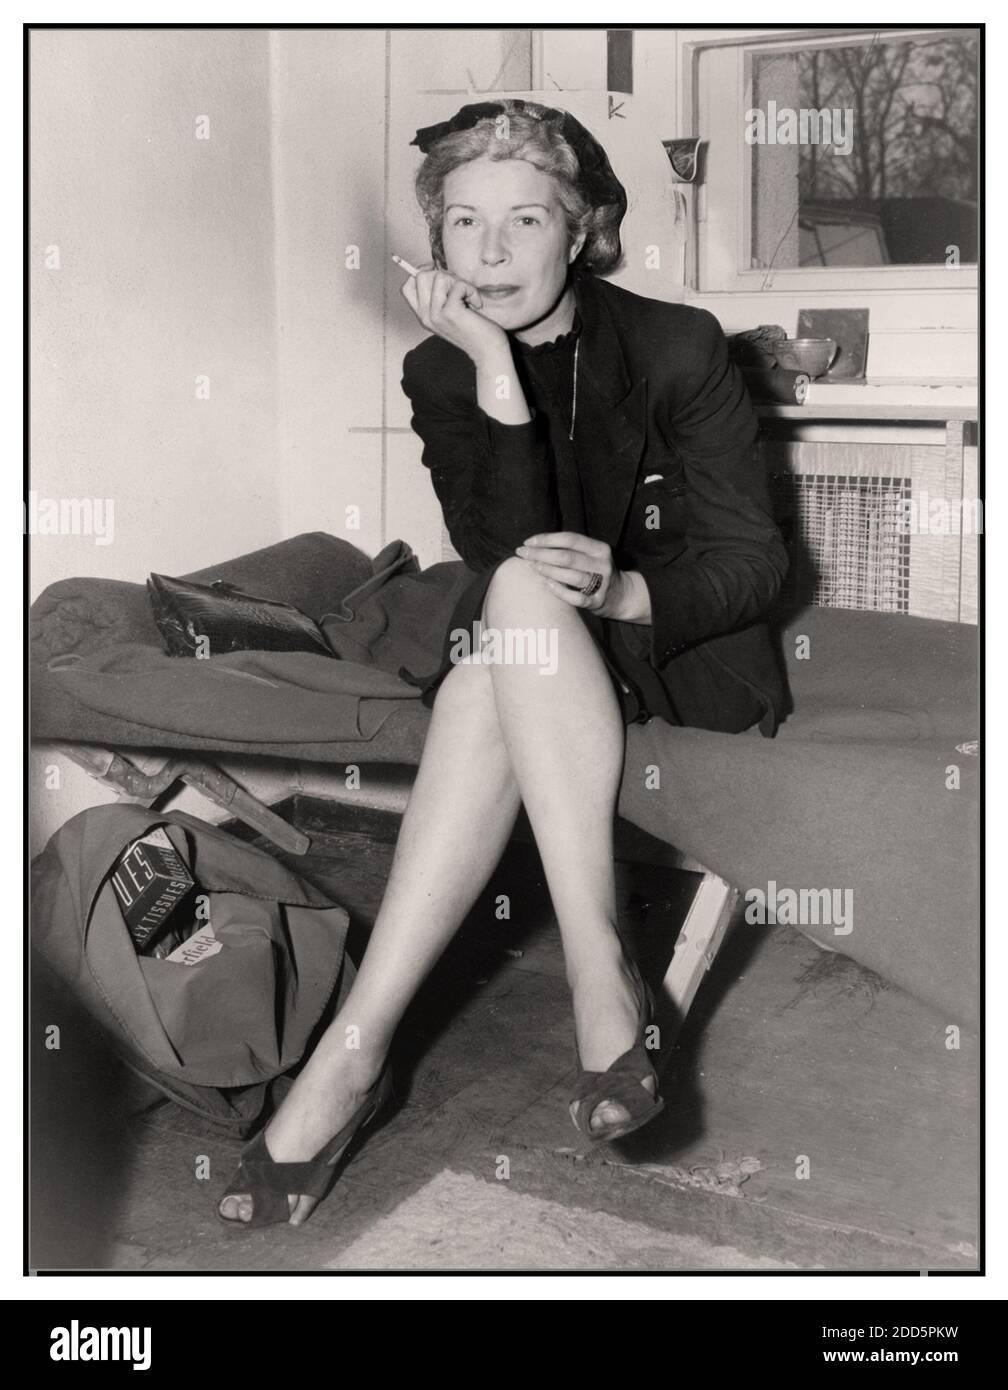 AXIS SALLY Archive WW2 image d'Axis Sally / Mildred Gillars un radiodiffuseur pour la radio d'État allemande nazie pendant WW2 en garde à vue américaine, elle a été jugée pour trahison et emprisonnée pendant 10 ans Banque D'Images